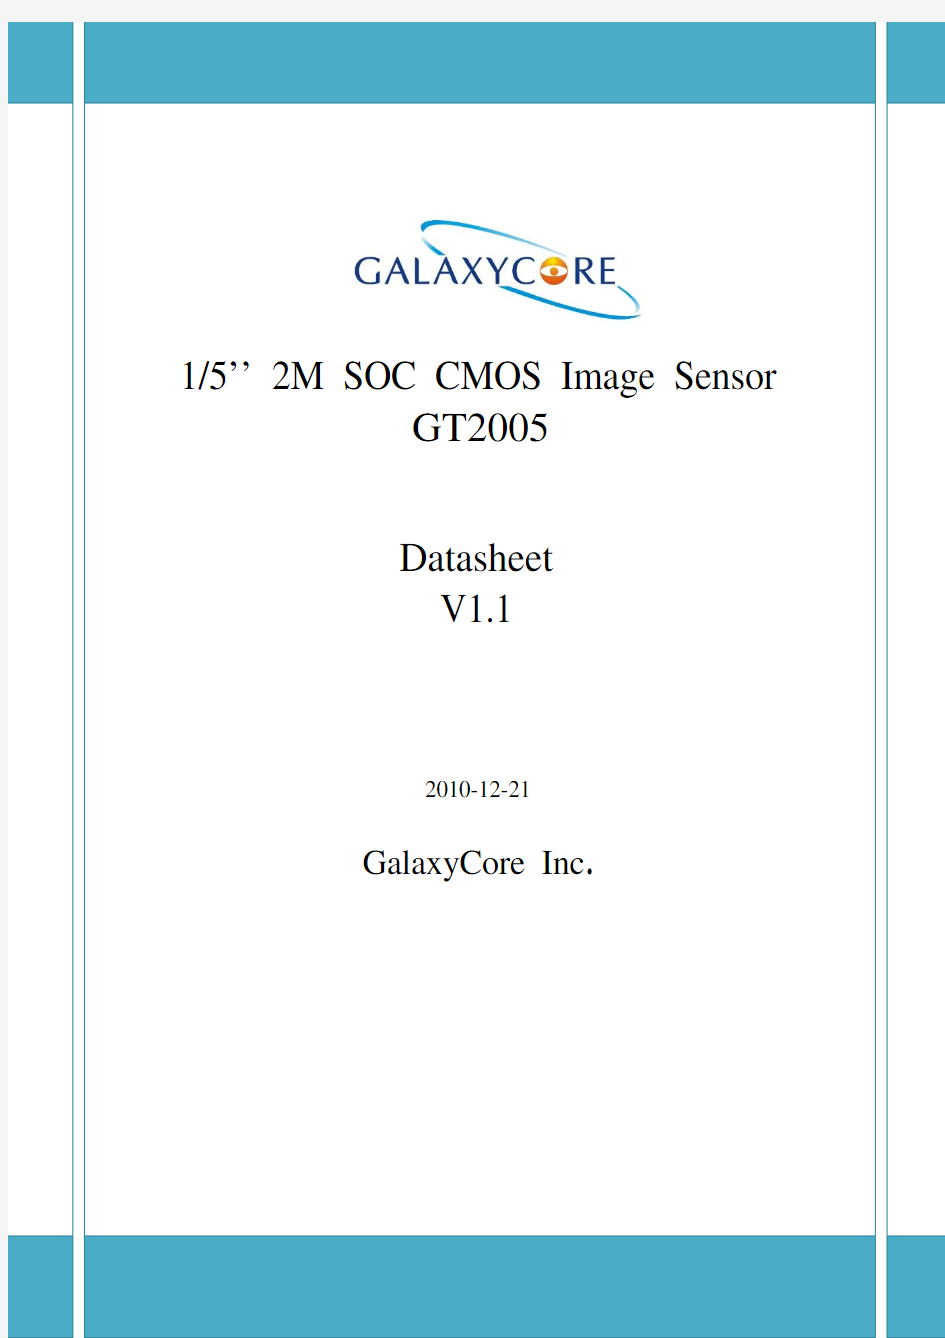 GT2005 2M SOC DataSheet V1.1_Release_1221